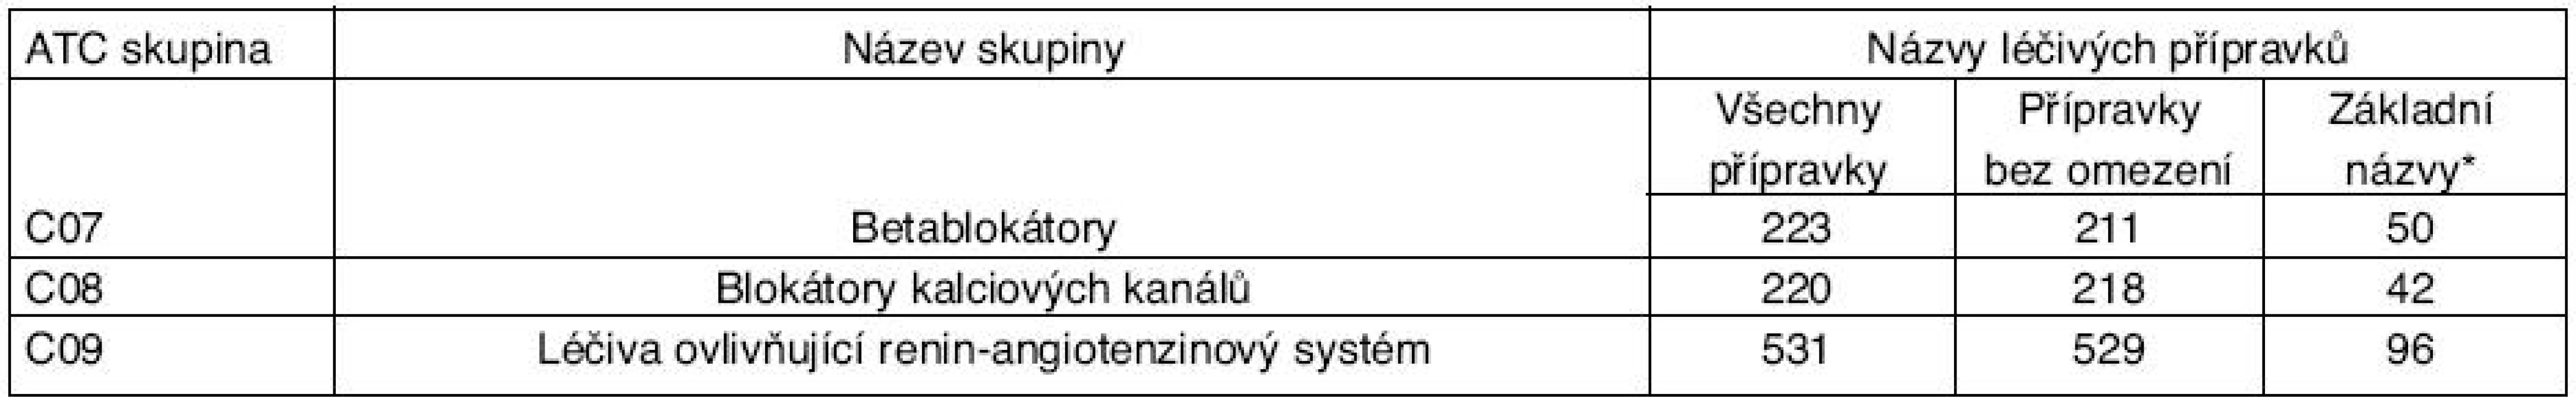 Počty názvů kardiovaskulárních léčiv v jednotlivých lékových skupinách v ČR uvedených v číselníku hromadně vyráběných léčiv platném od 1. 7. 2005